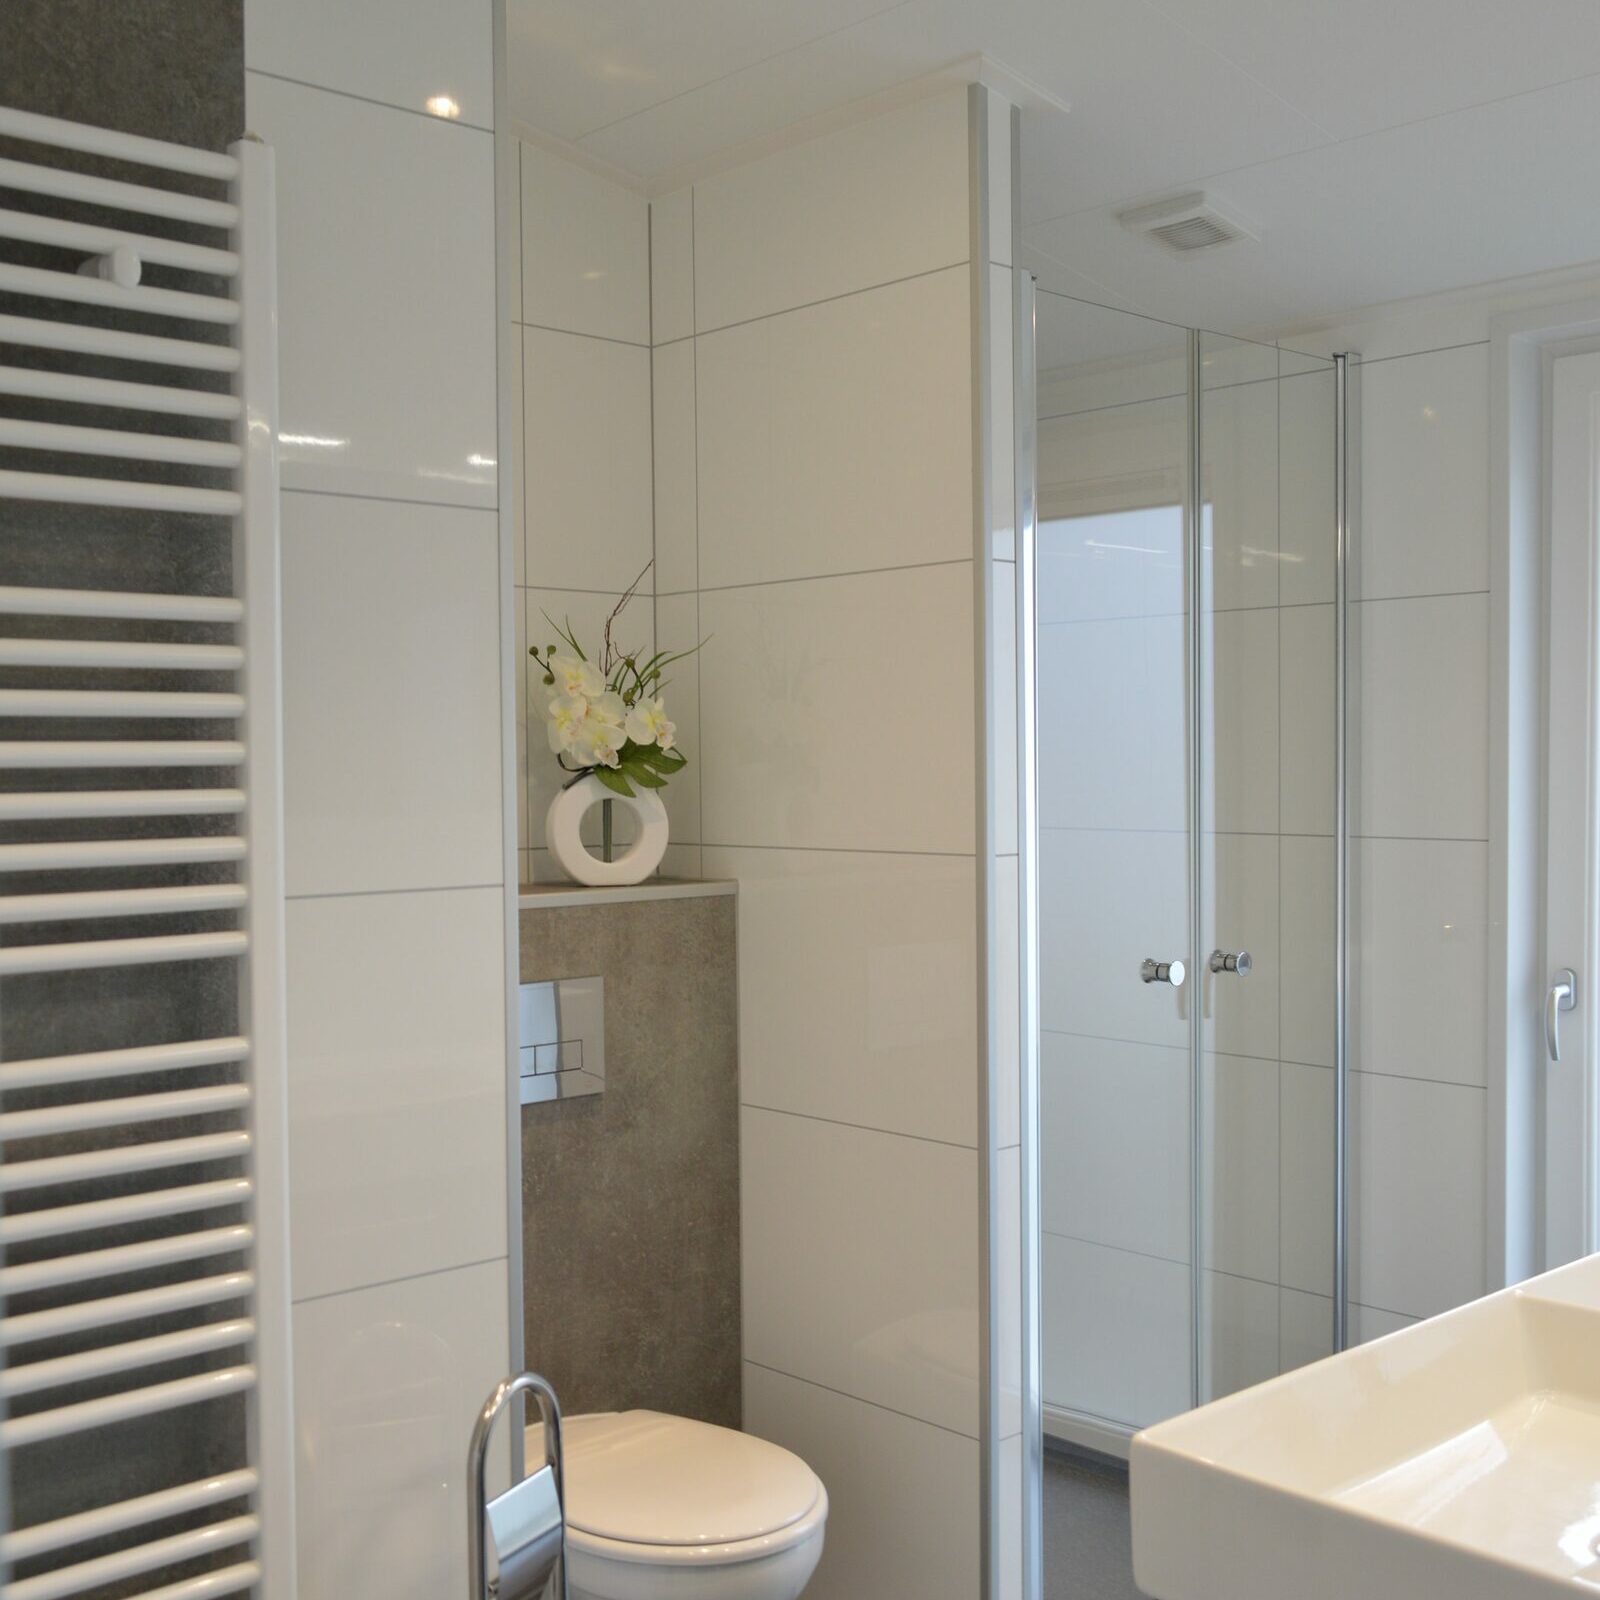 Schaelsbergerbosch – Rental – Bathroom